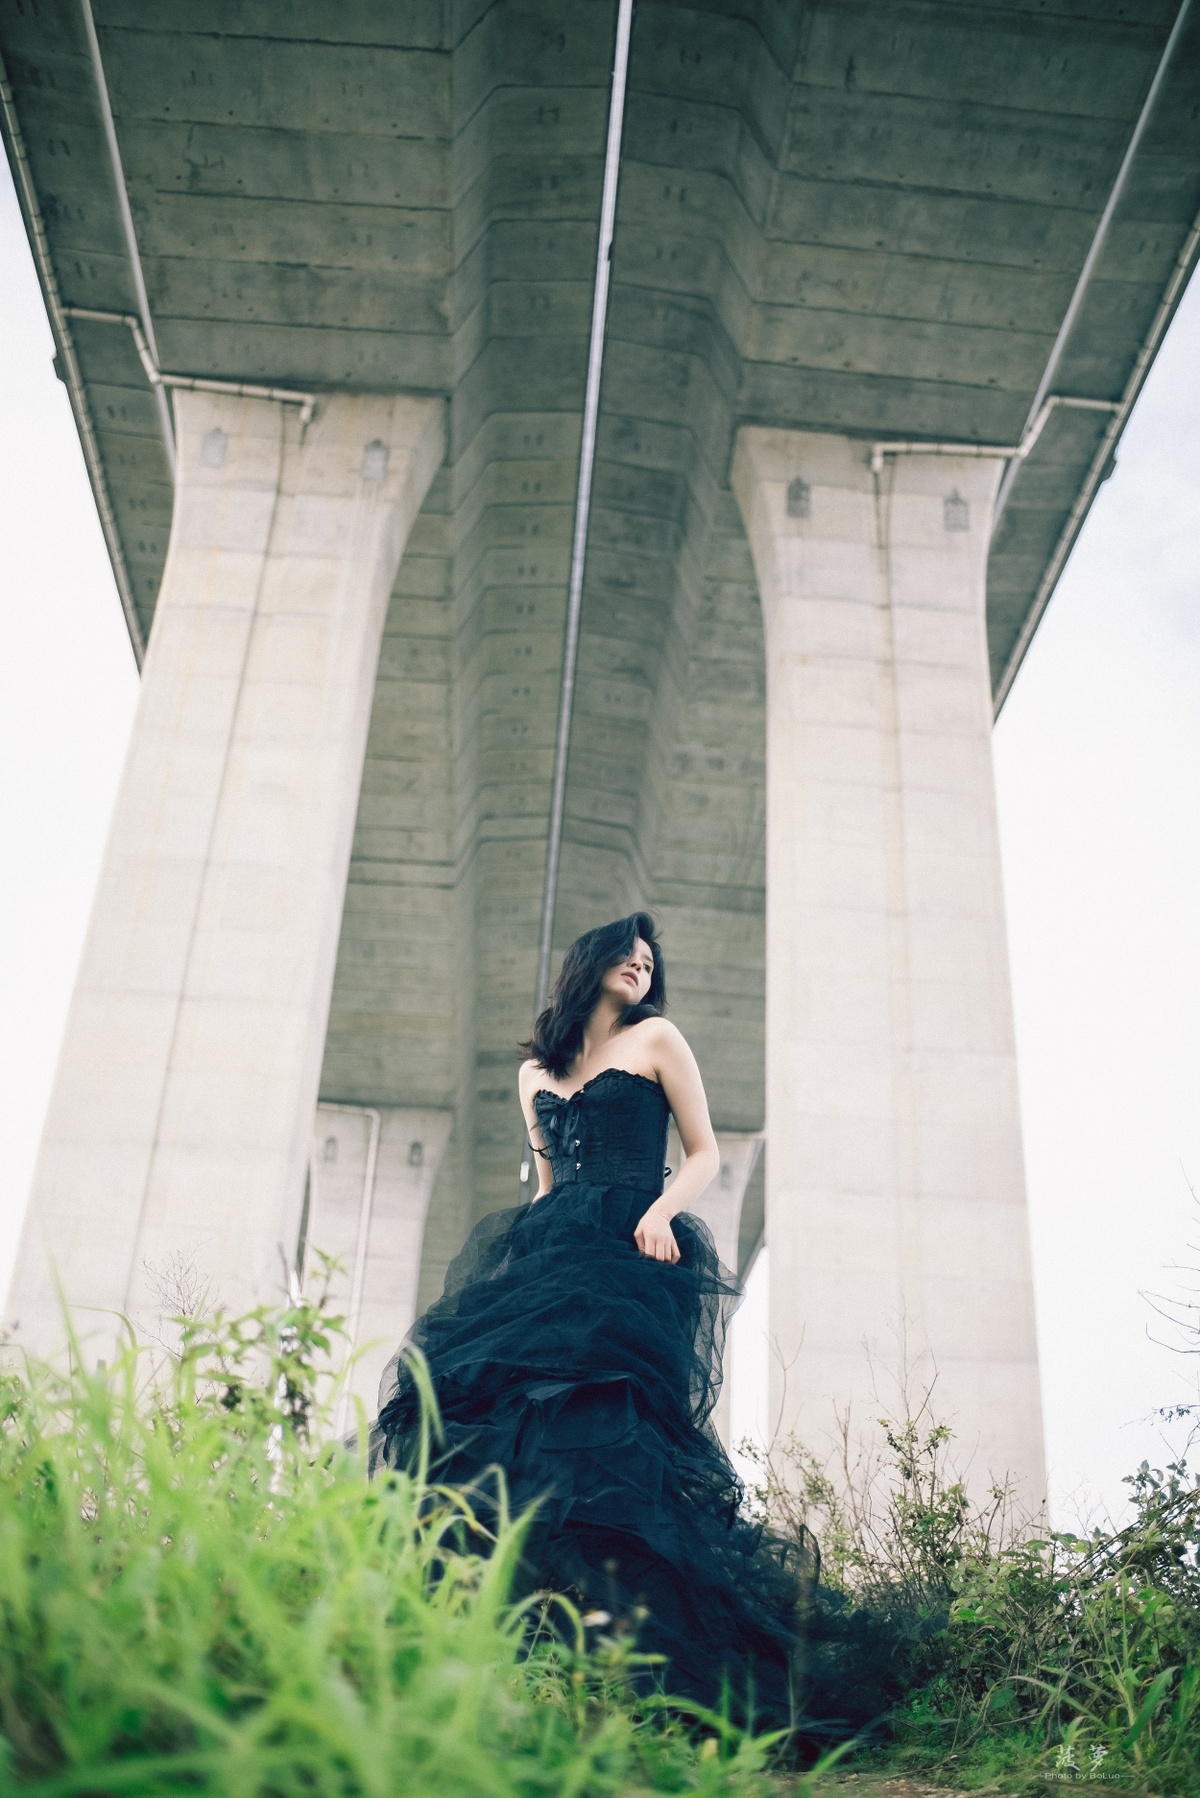 一个穿黑色连衣裙的女人站在桥下